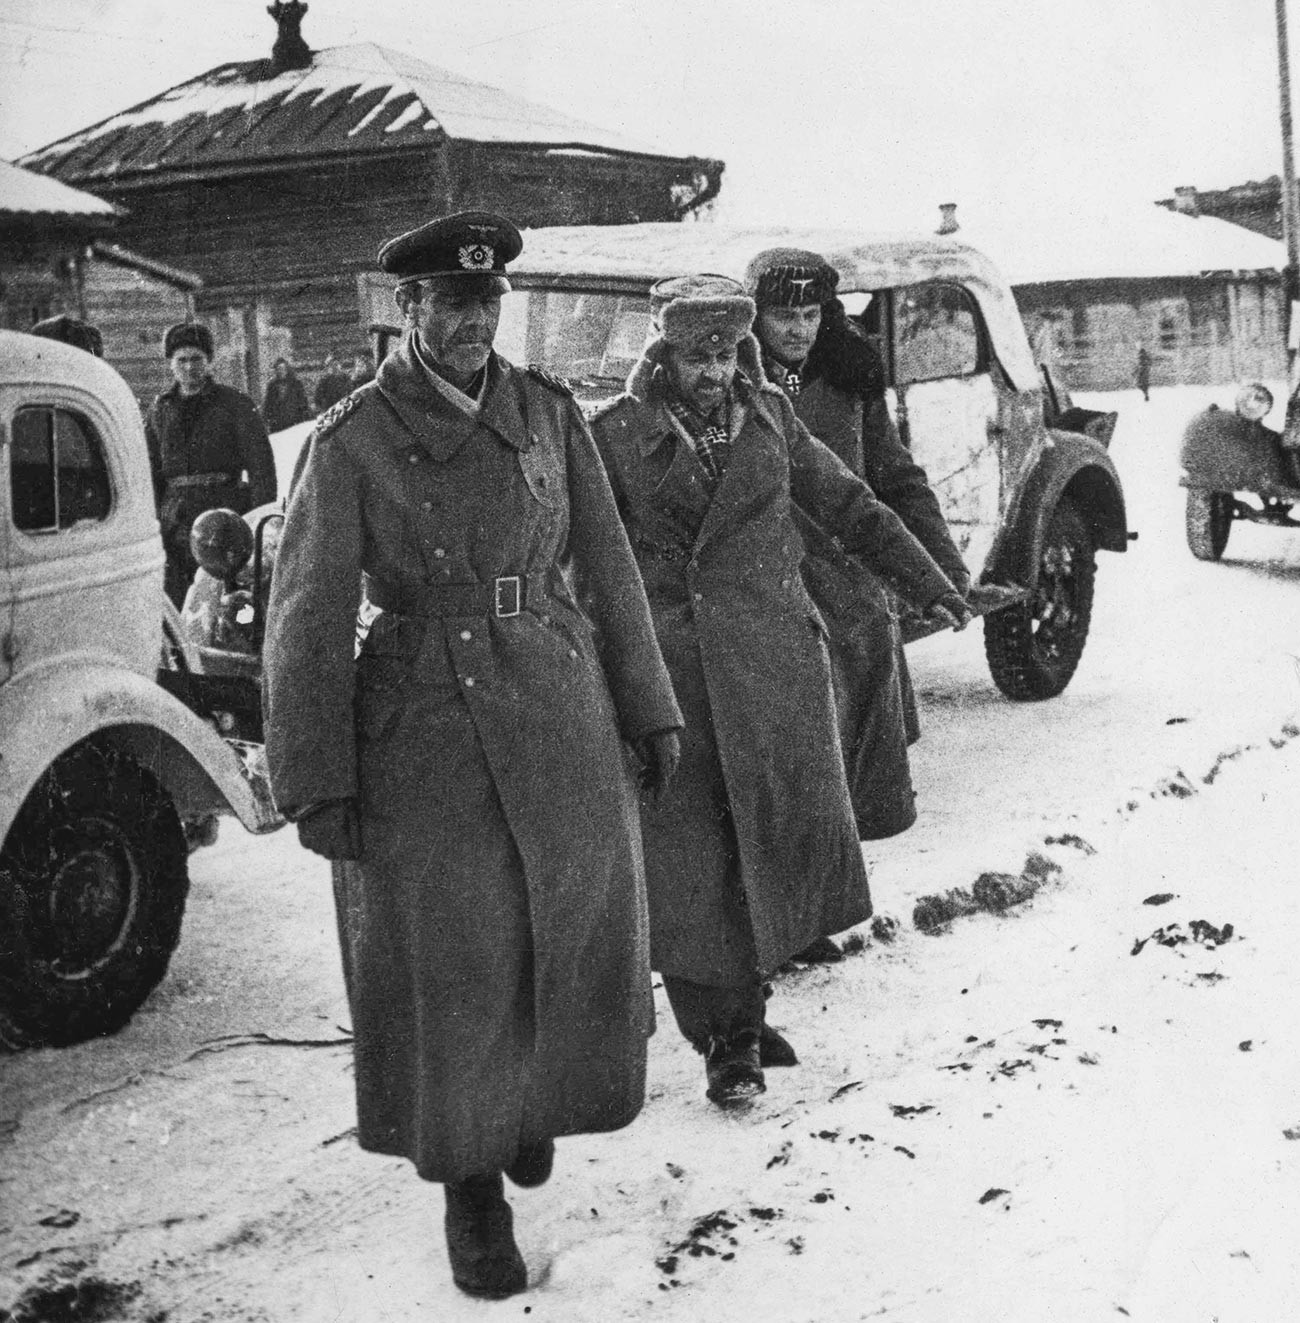 Il comandante Friedrich Paulus fatto prigioniero a Stalingrado con i suoi uomini